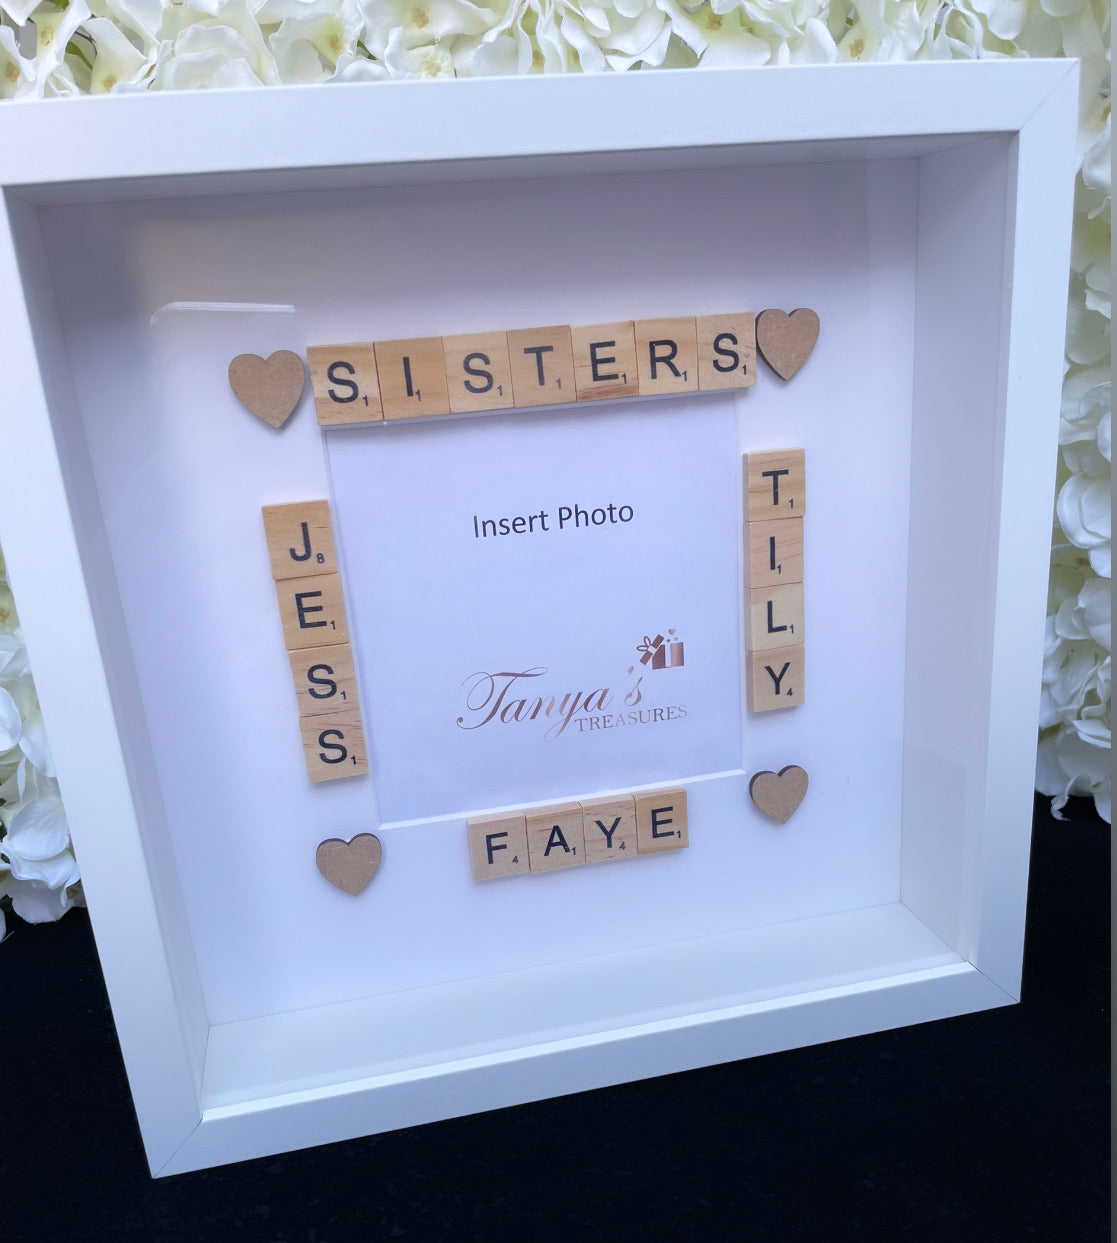 Sisters forever – Tanya's Treasures